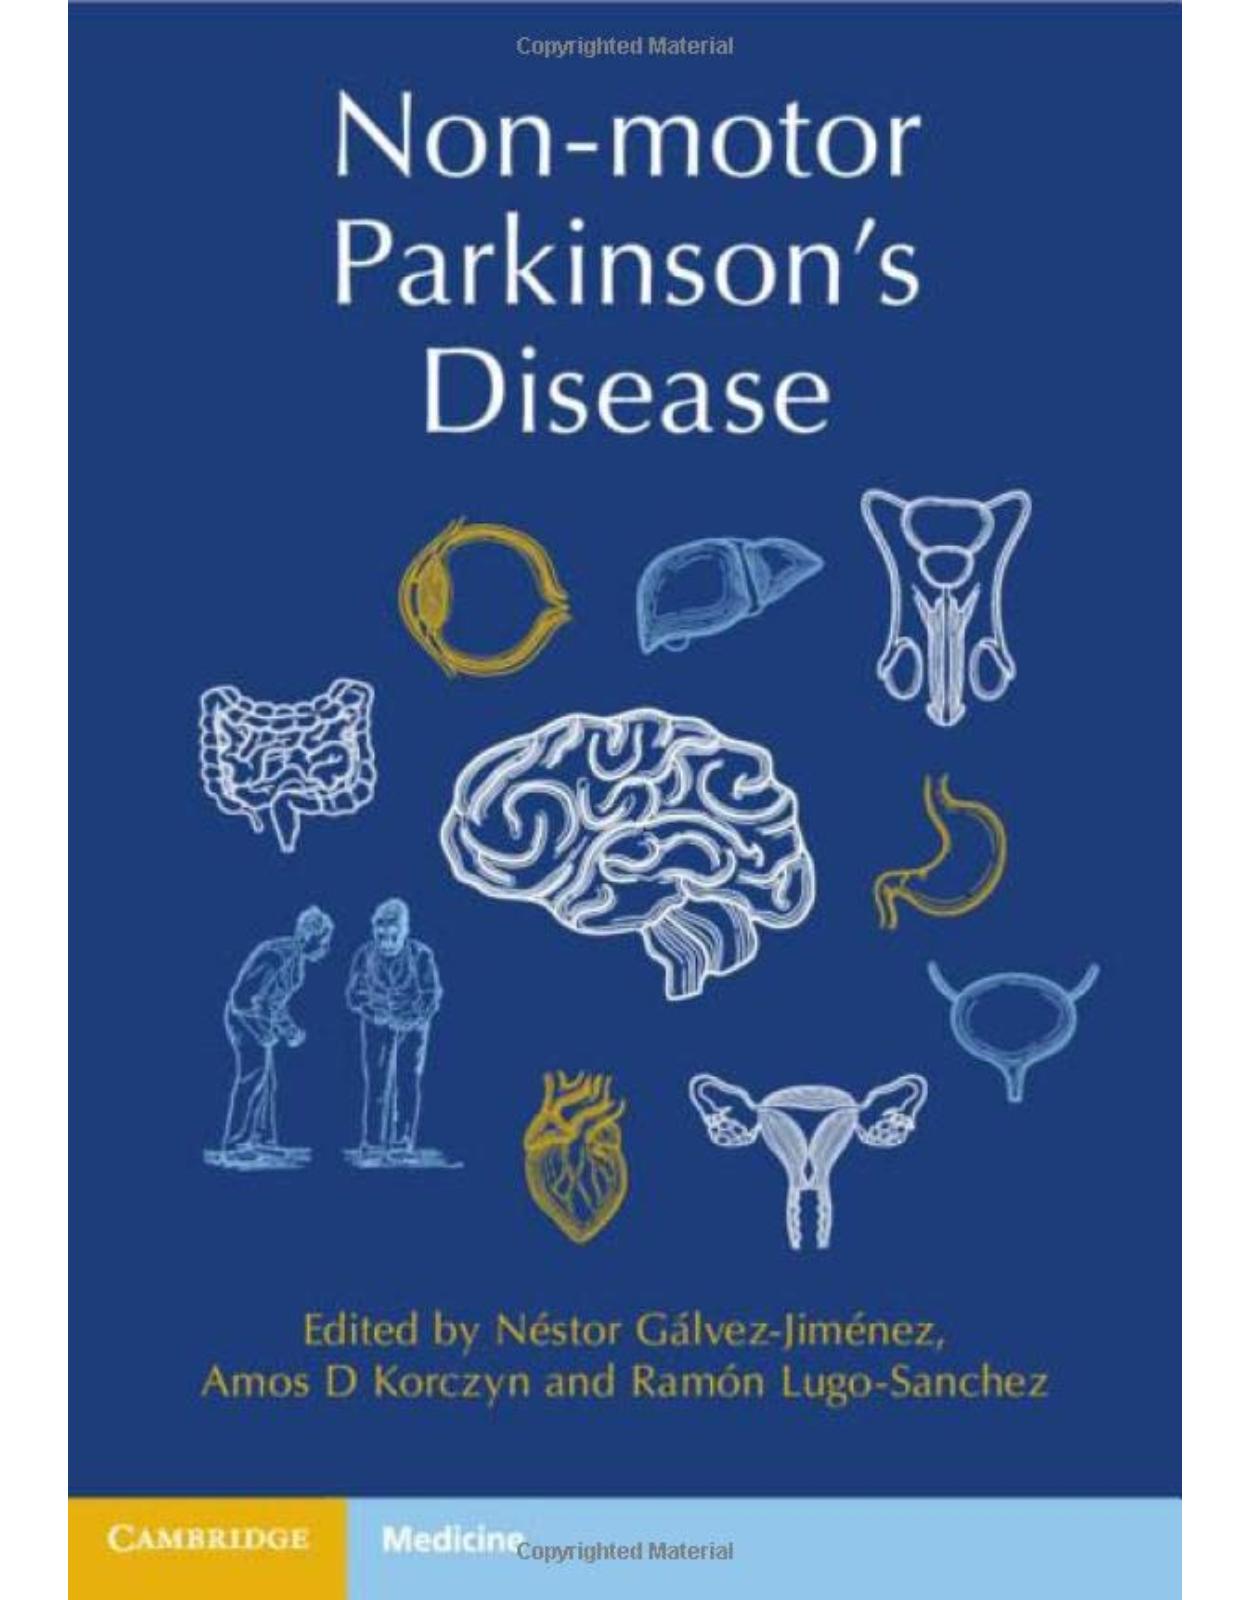 Non-motor Parkinson’s Disease